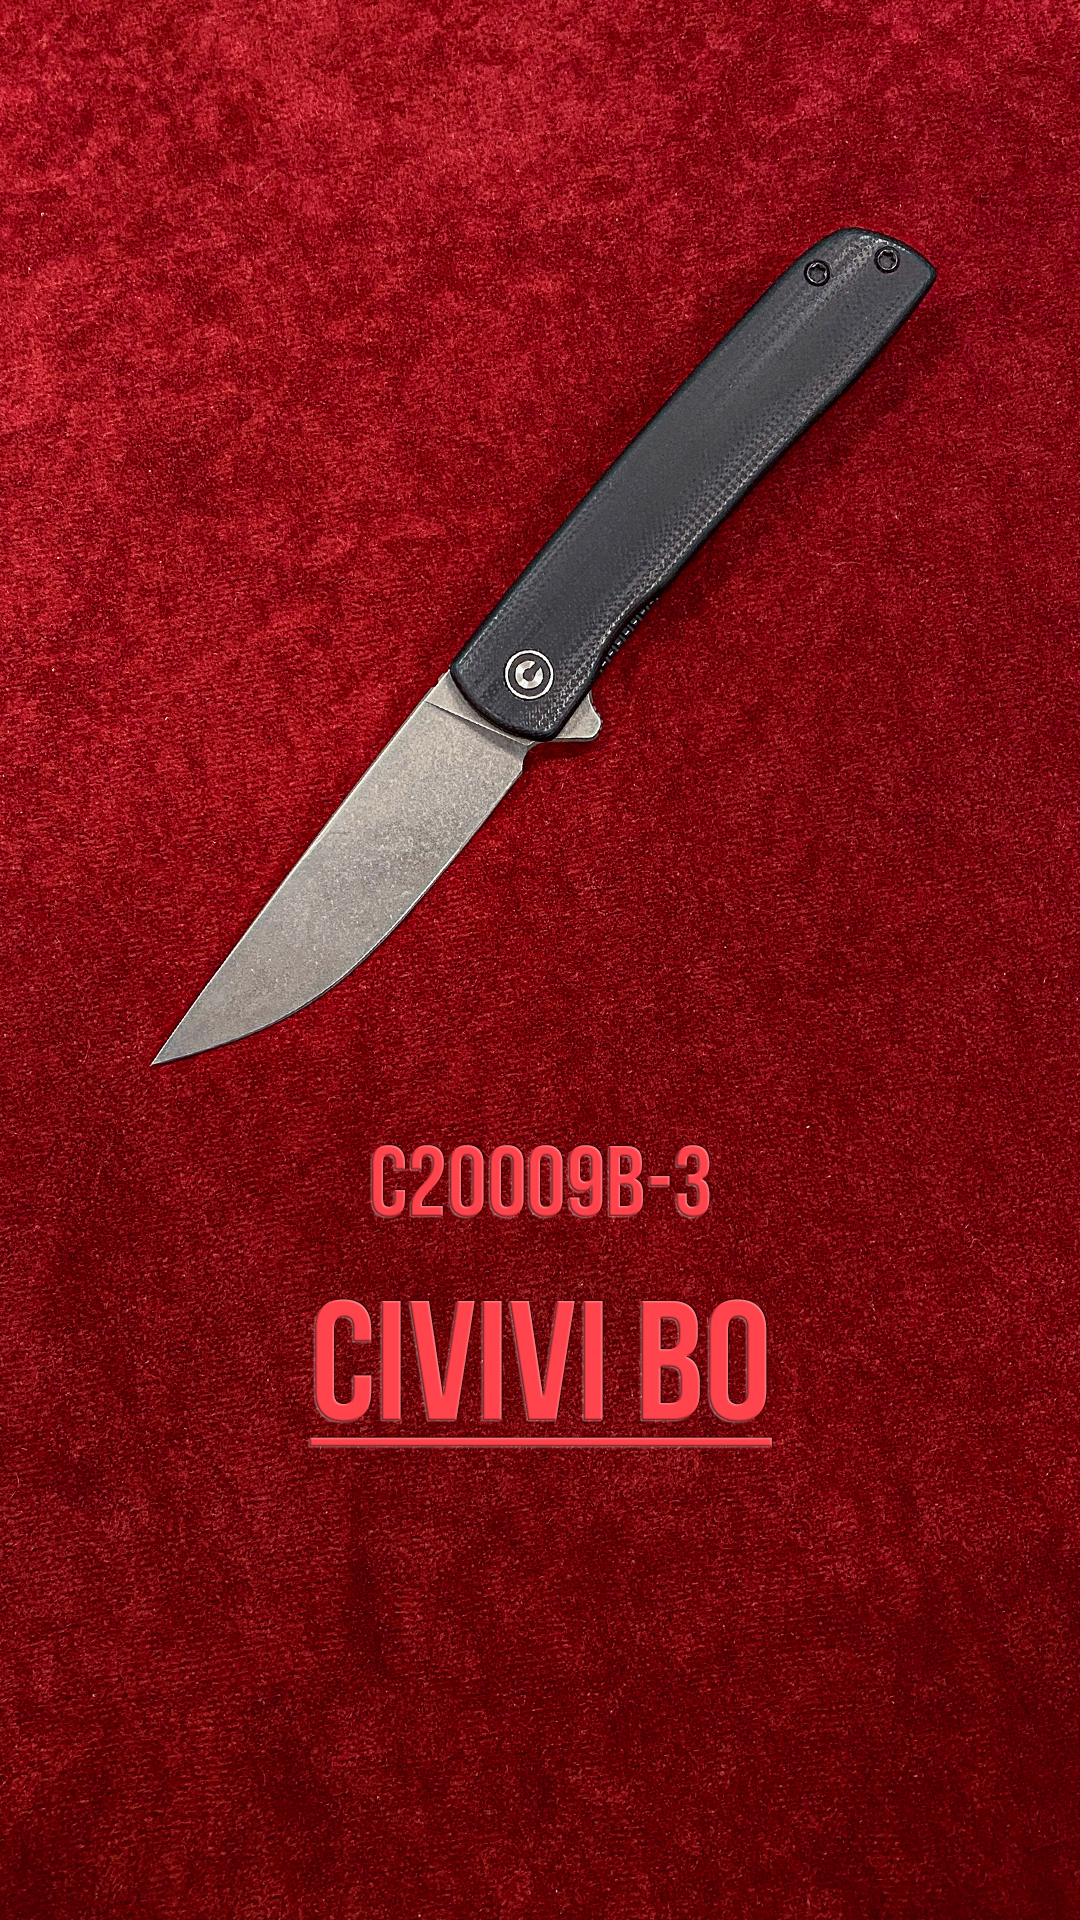 Civivi Bo (C20009B-3)